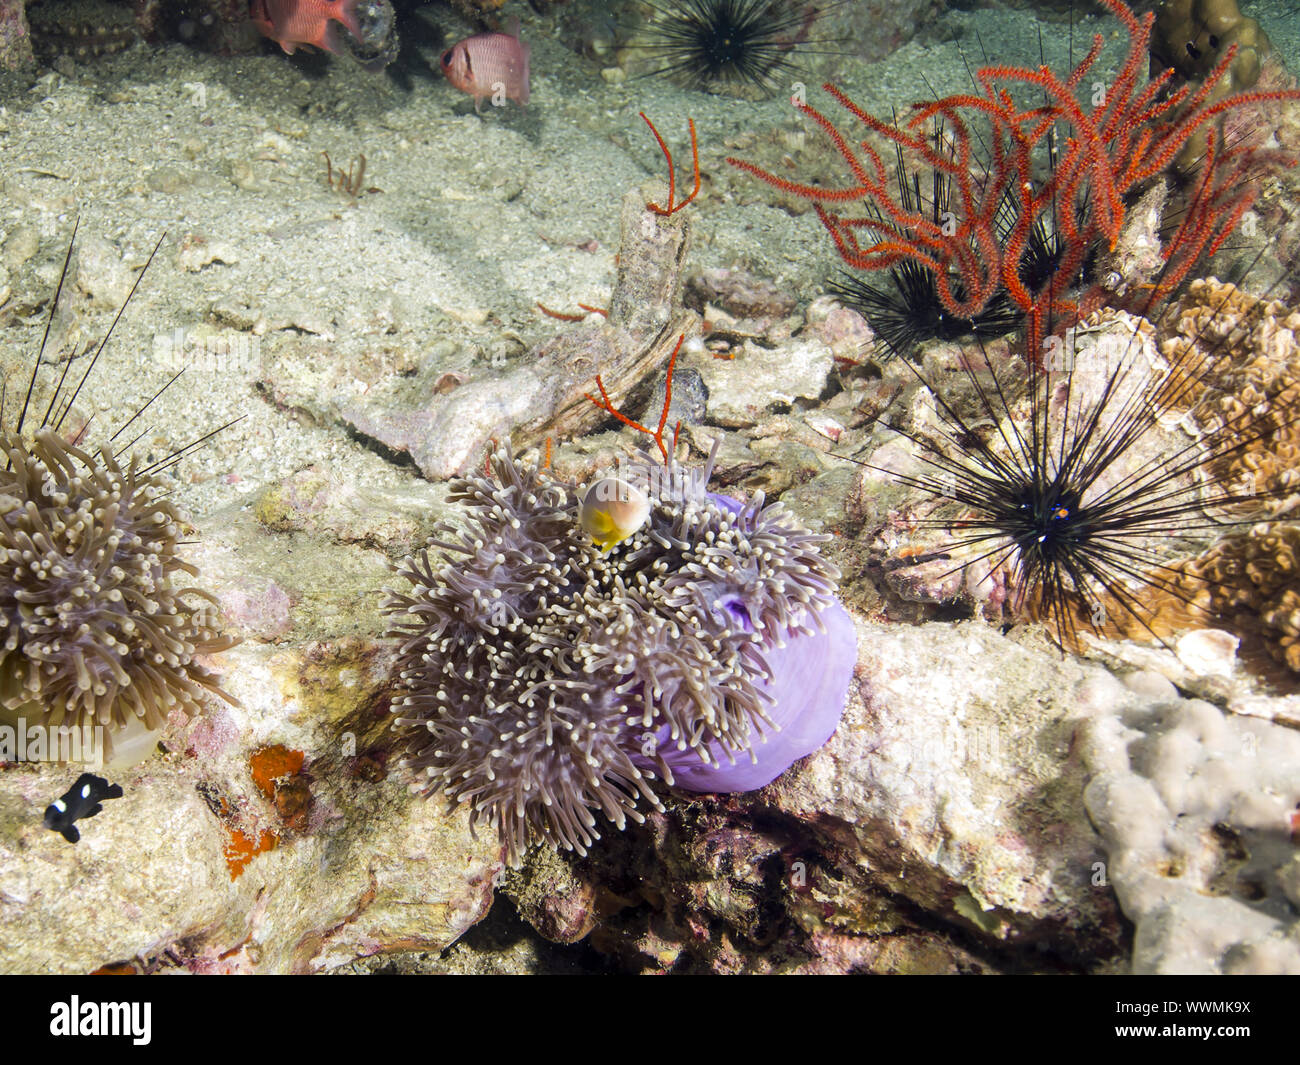 magnificent sea anemone Stock Photo